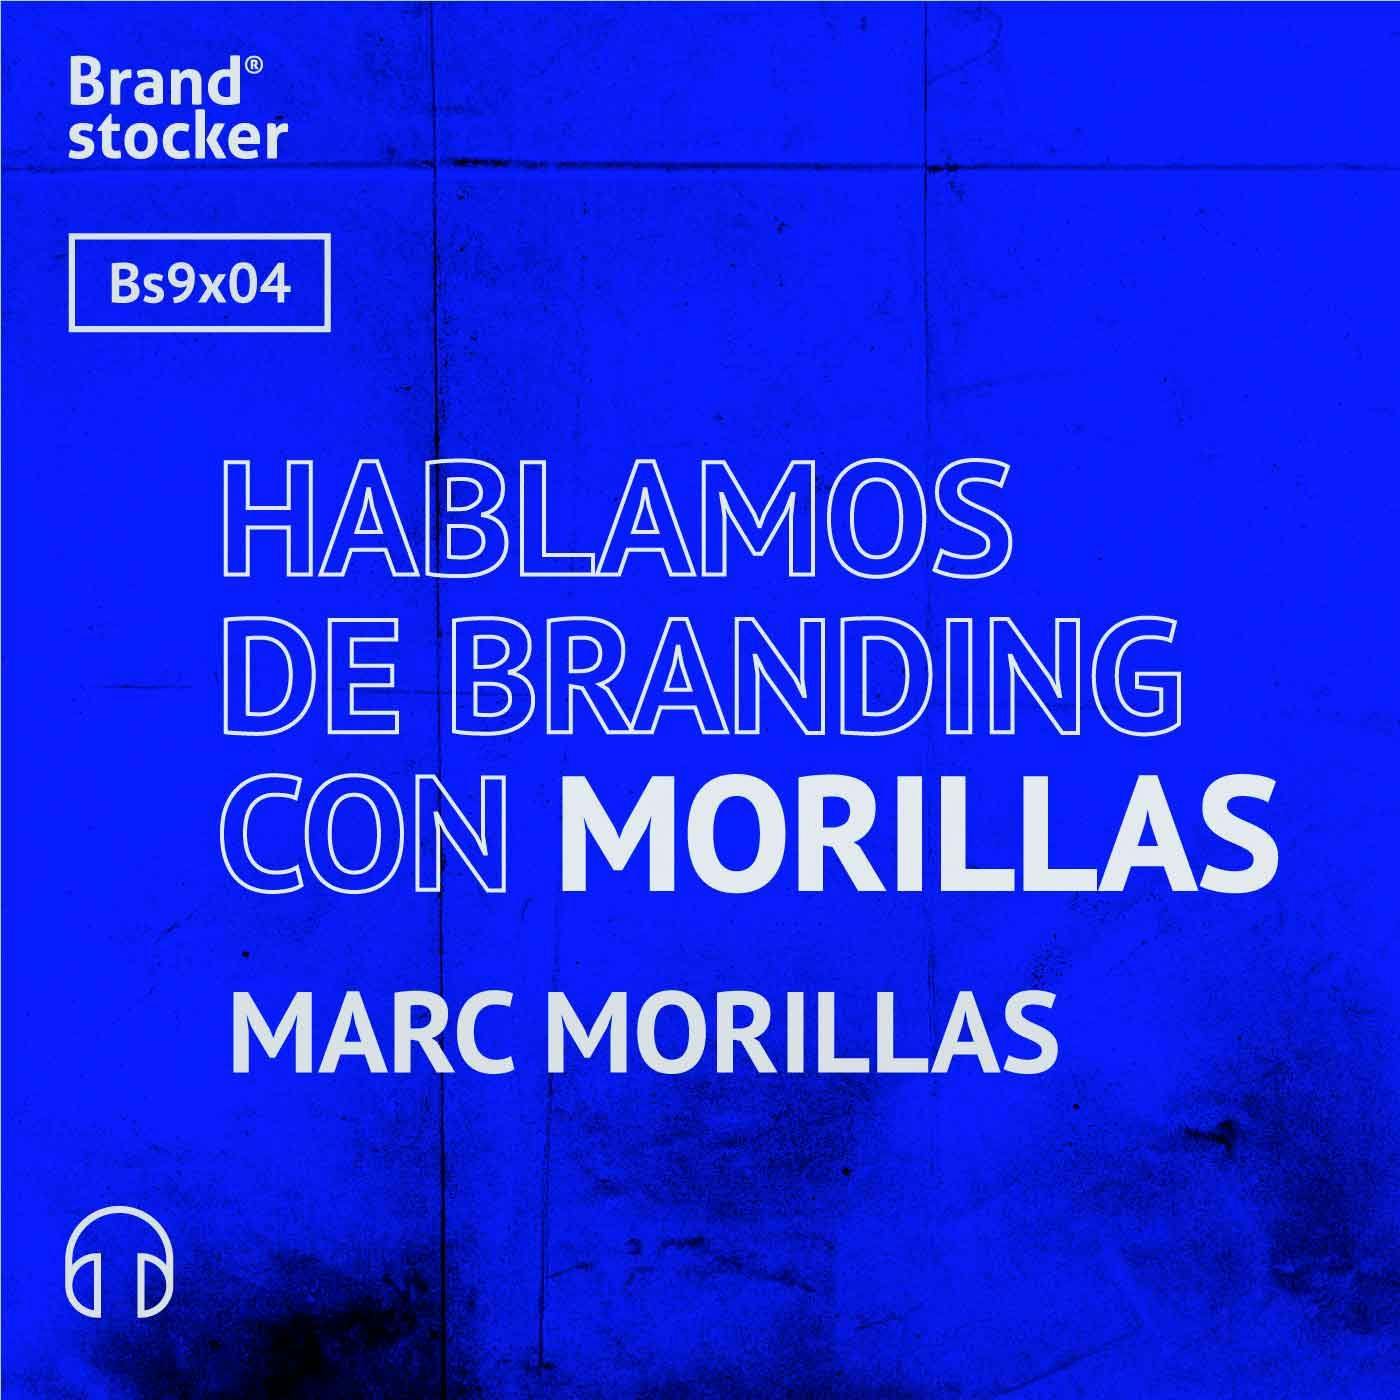 Bs9x04 - Hablamos de branding con Morillas